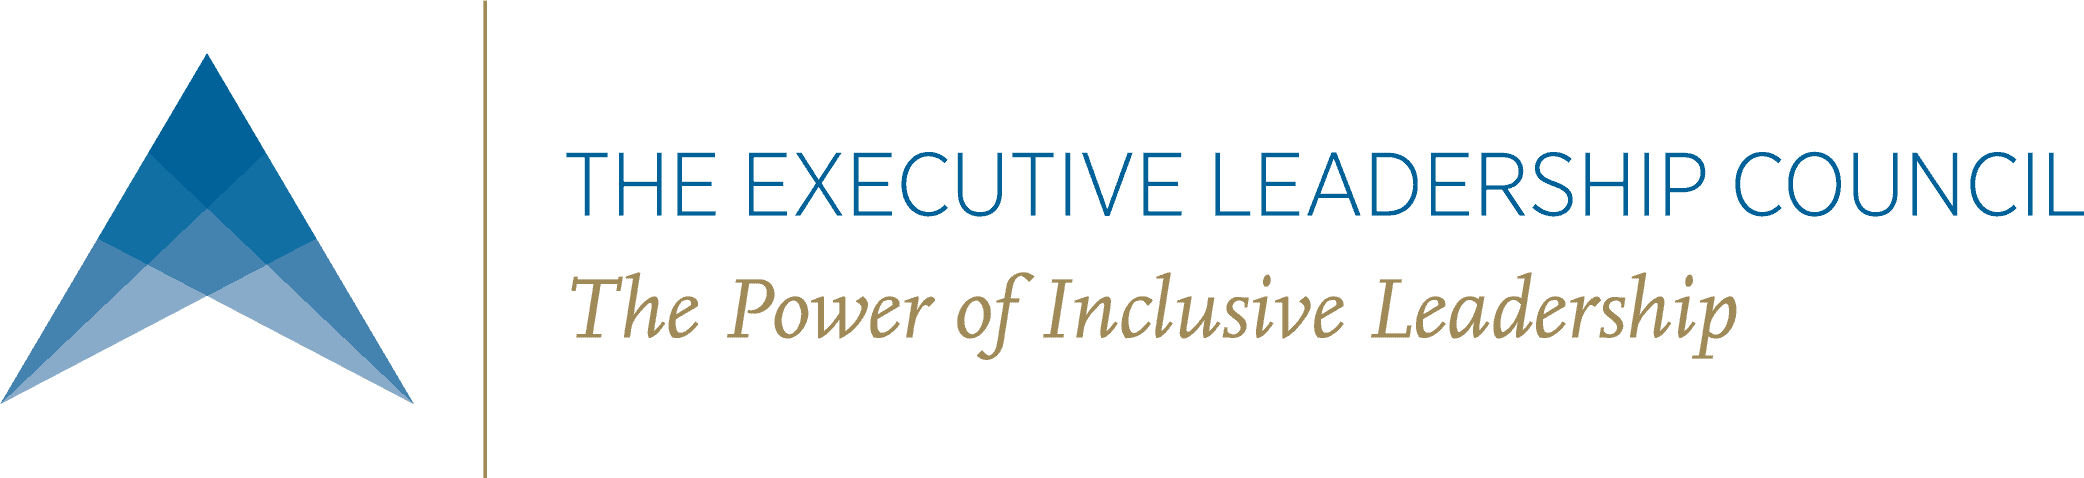 The Executive Leadership Council 